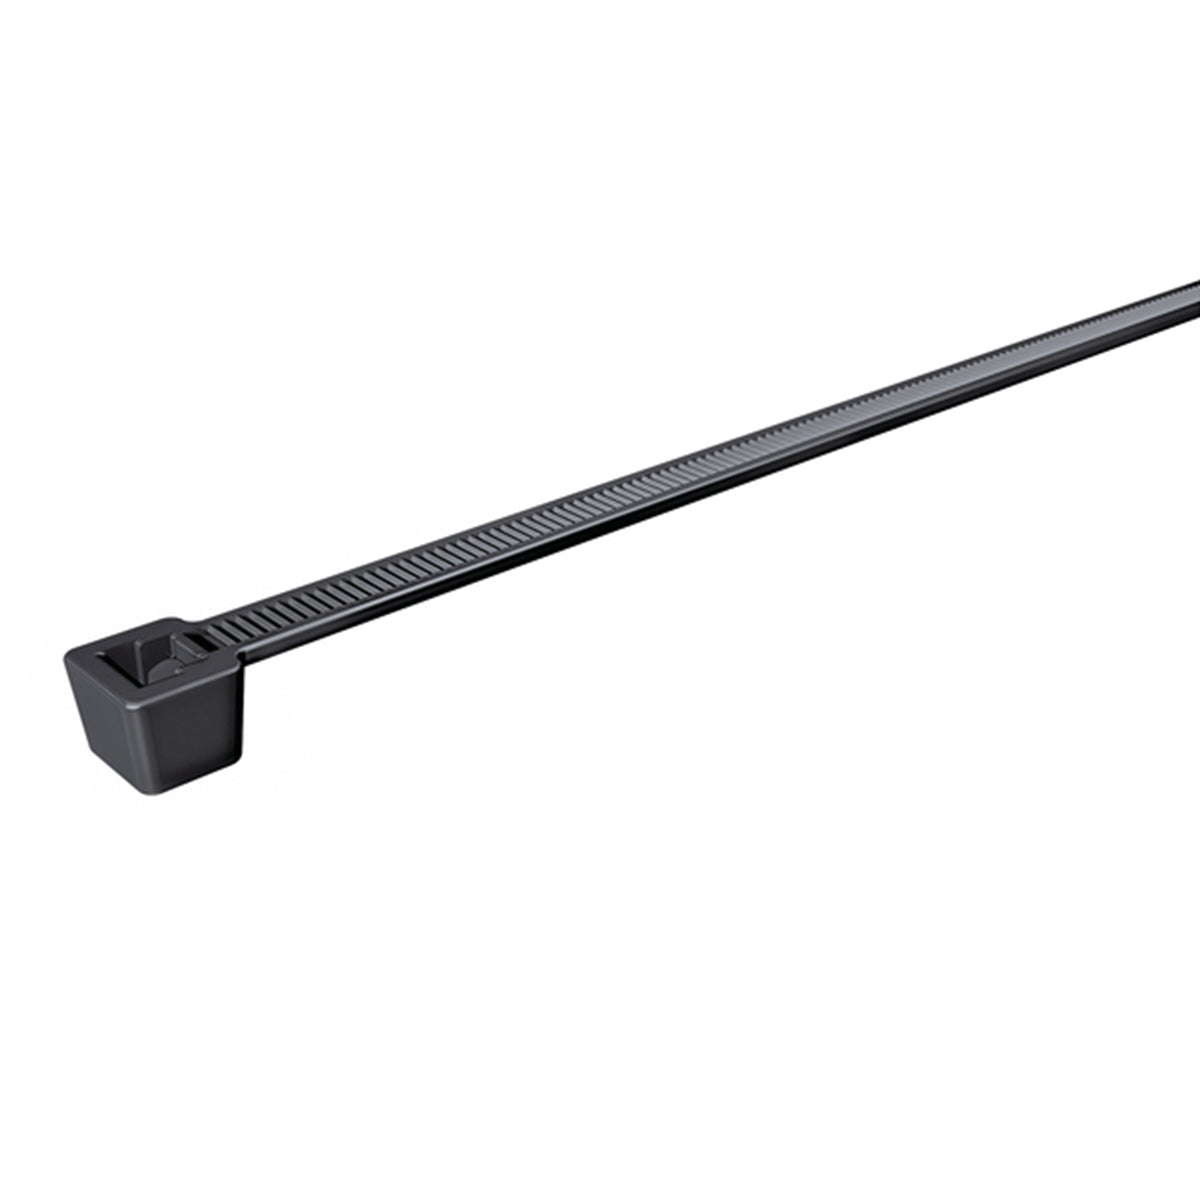 Hellerman Tyton T50L Cable Ties 4.7mm x 392mm Black (Qty: 100)